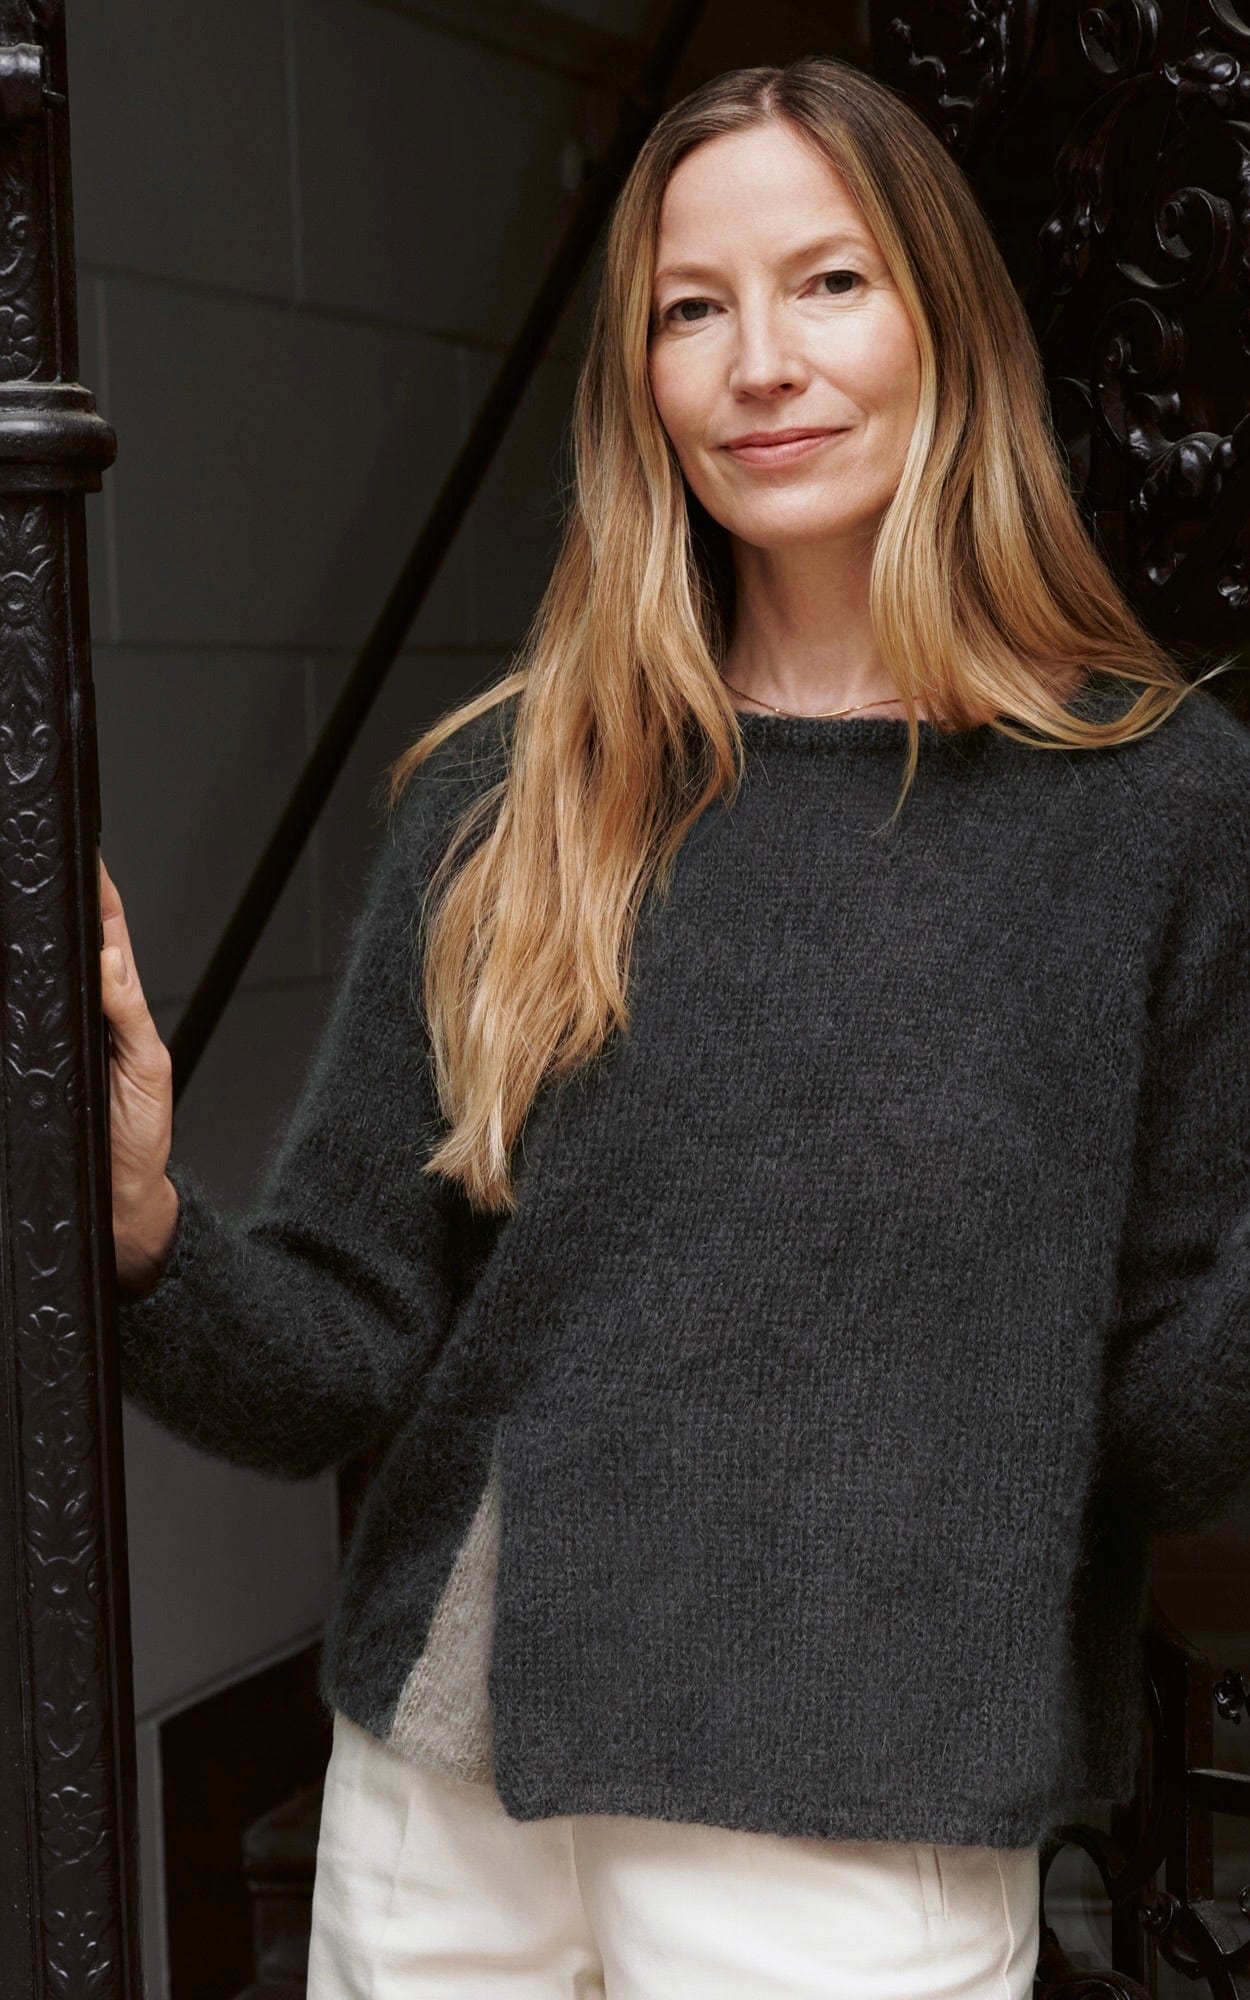 Pullover zweifarbig - SILKHAIR - Strickset von LANA GROSSA jetzt online kaufen bei OONIQUE